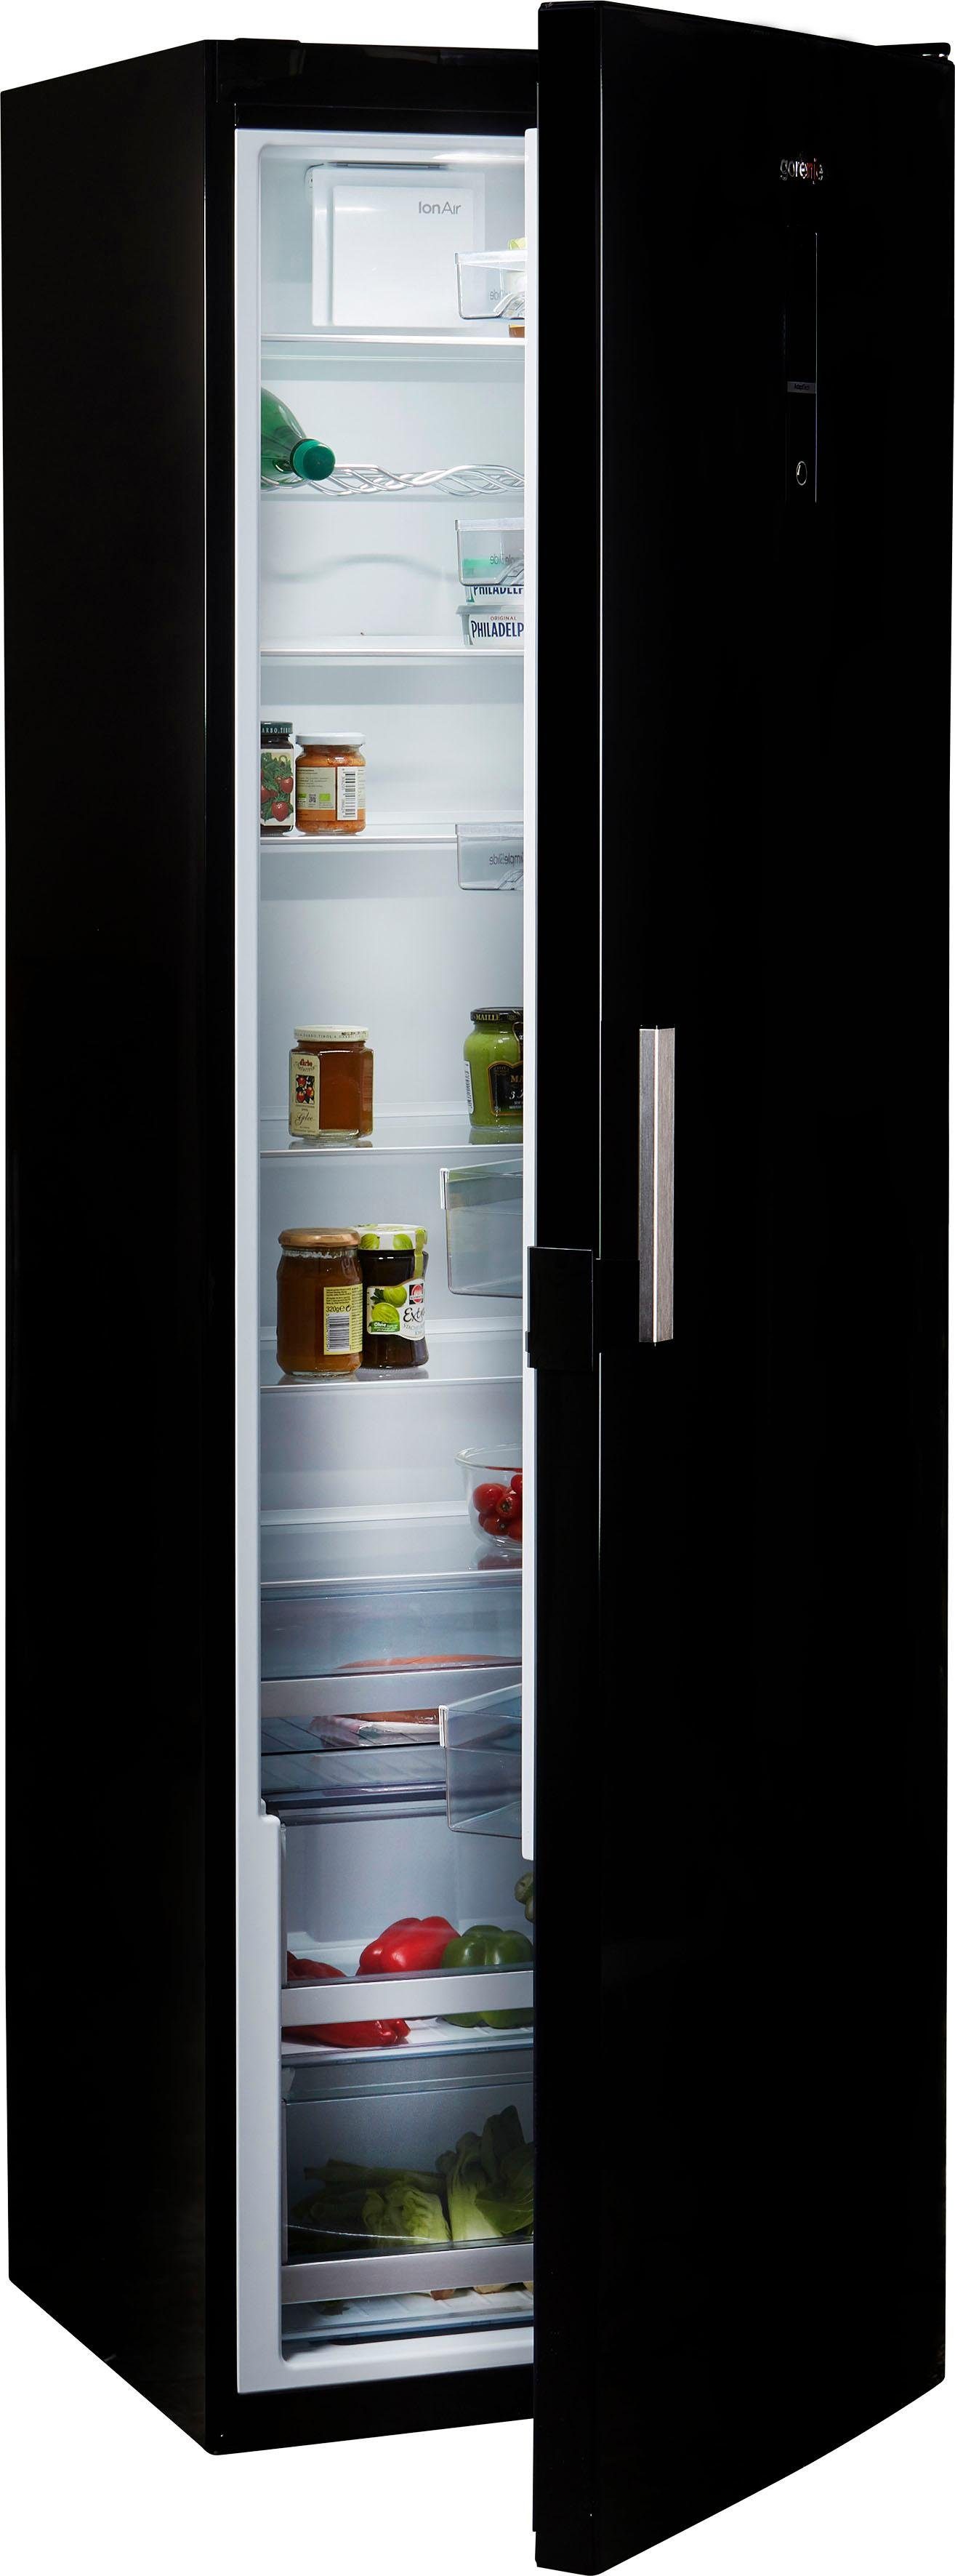 GORENJE Vollraumkühlschrank R6193LB, 185 cm hoch, 60 cm breit online kaufen  | OTTO